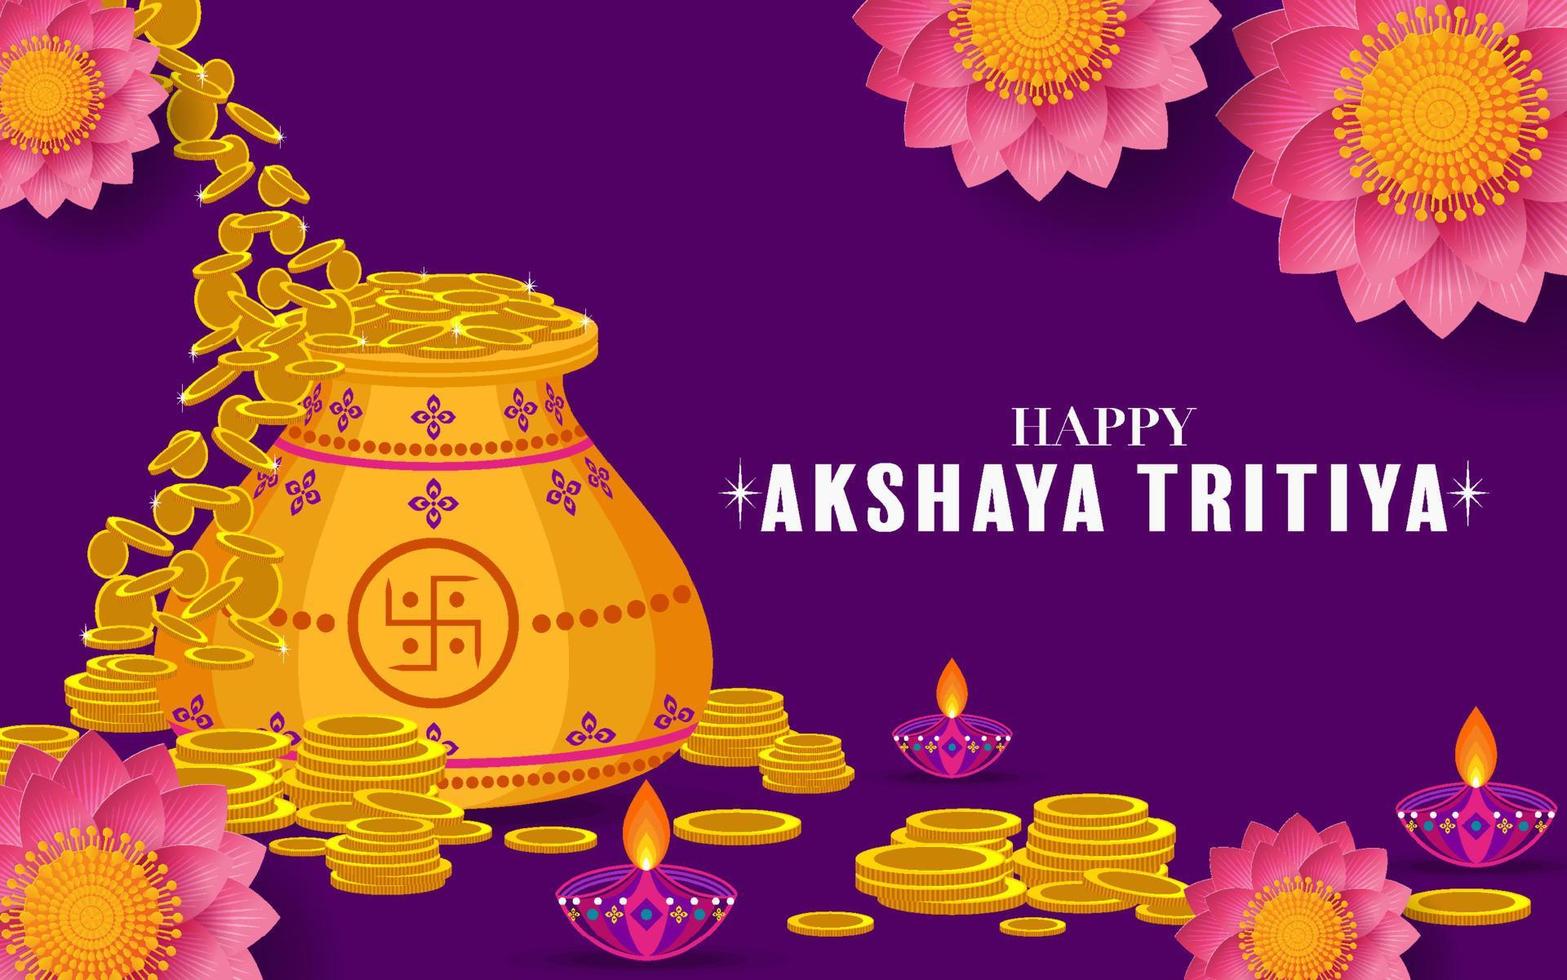 indisk religiös festival akshaya tritiya vektor